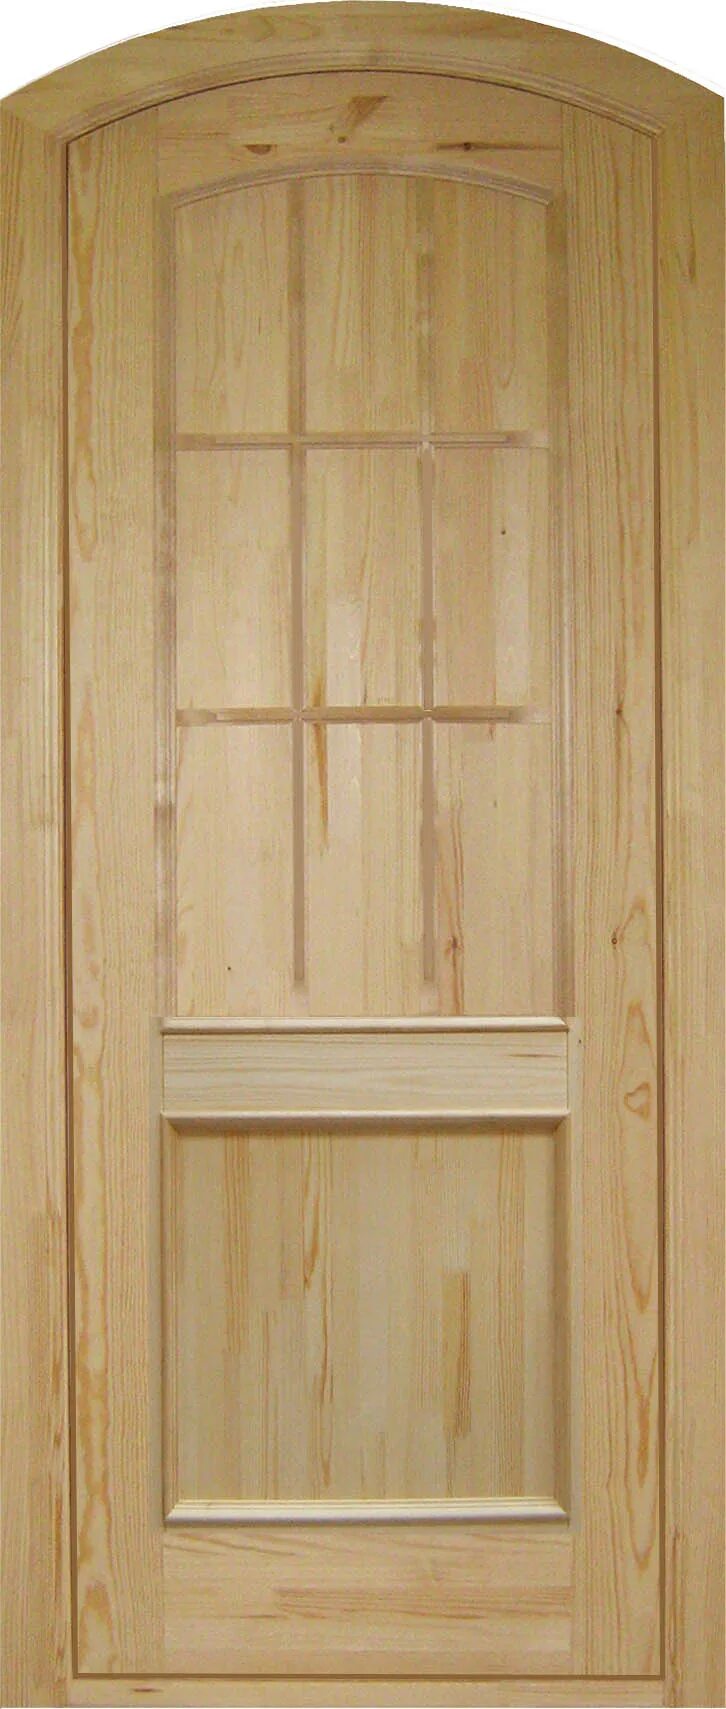 Блок из двух дверей. Дверь модель FF OKSAMANTY 3p. FF OKSAMANTY 3p дверь. Дверной блок деревянный. Дверь входная деревянная массив сосна.